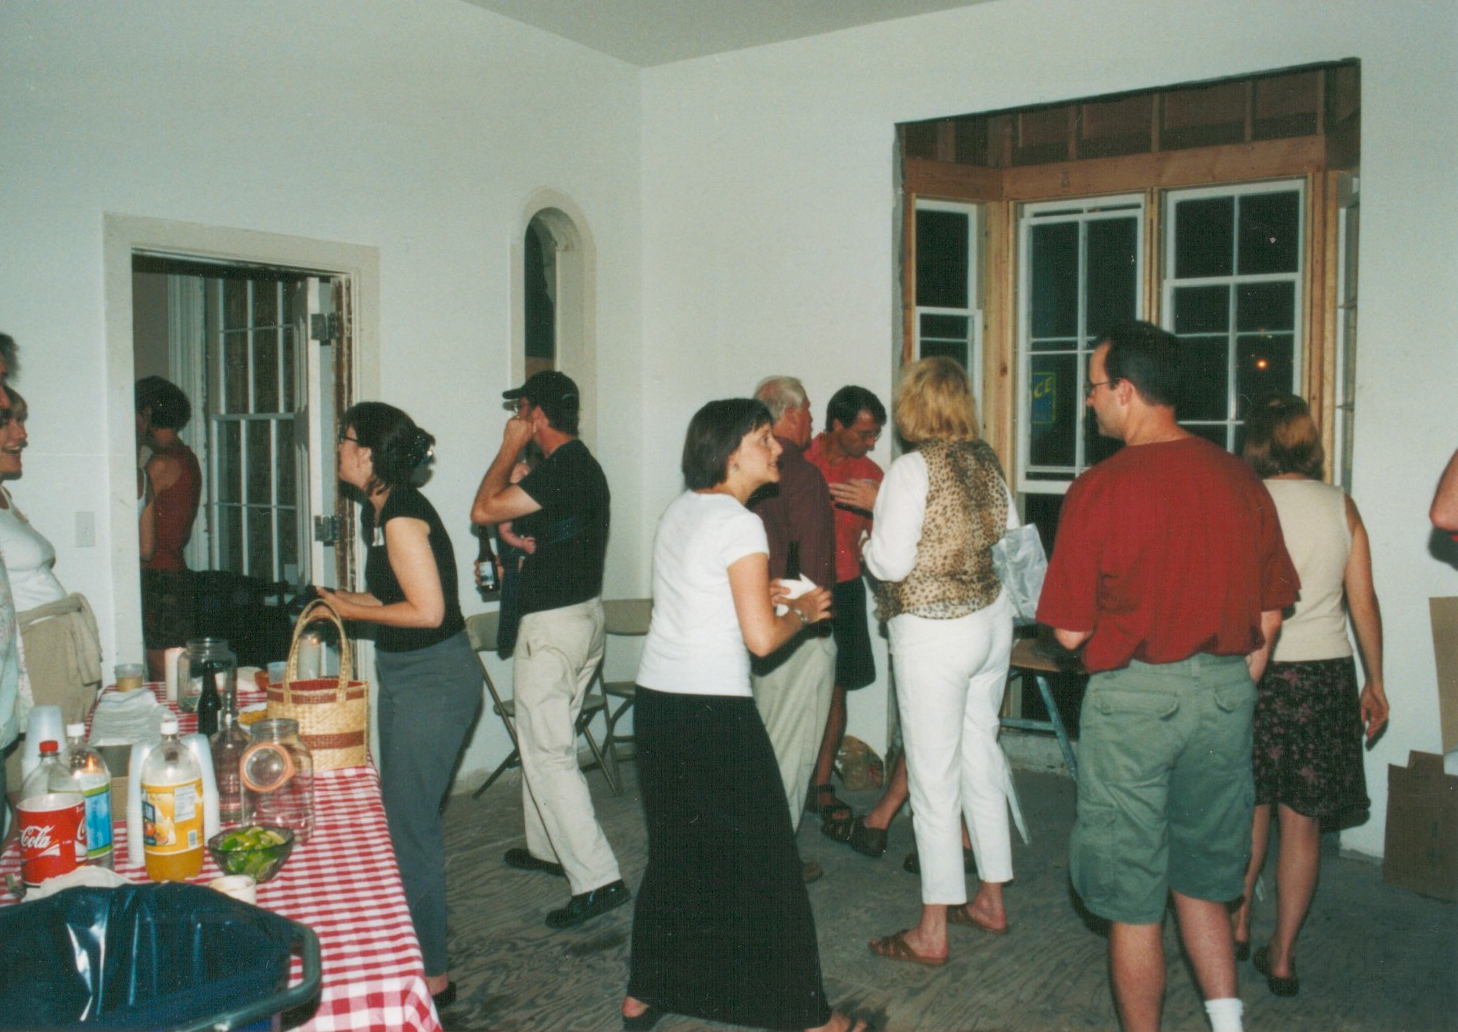  Pre-renovation party, 2002 